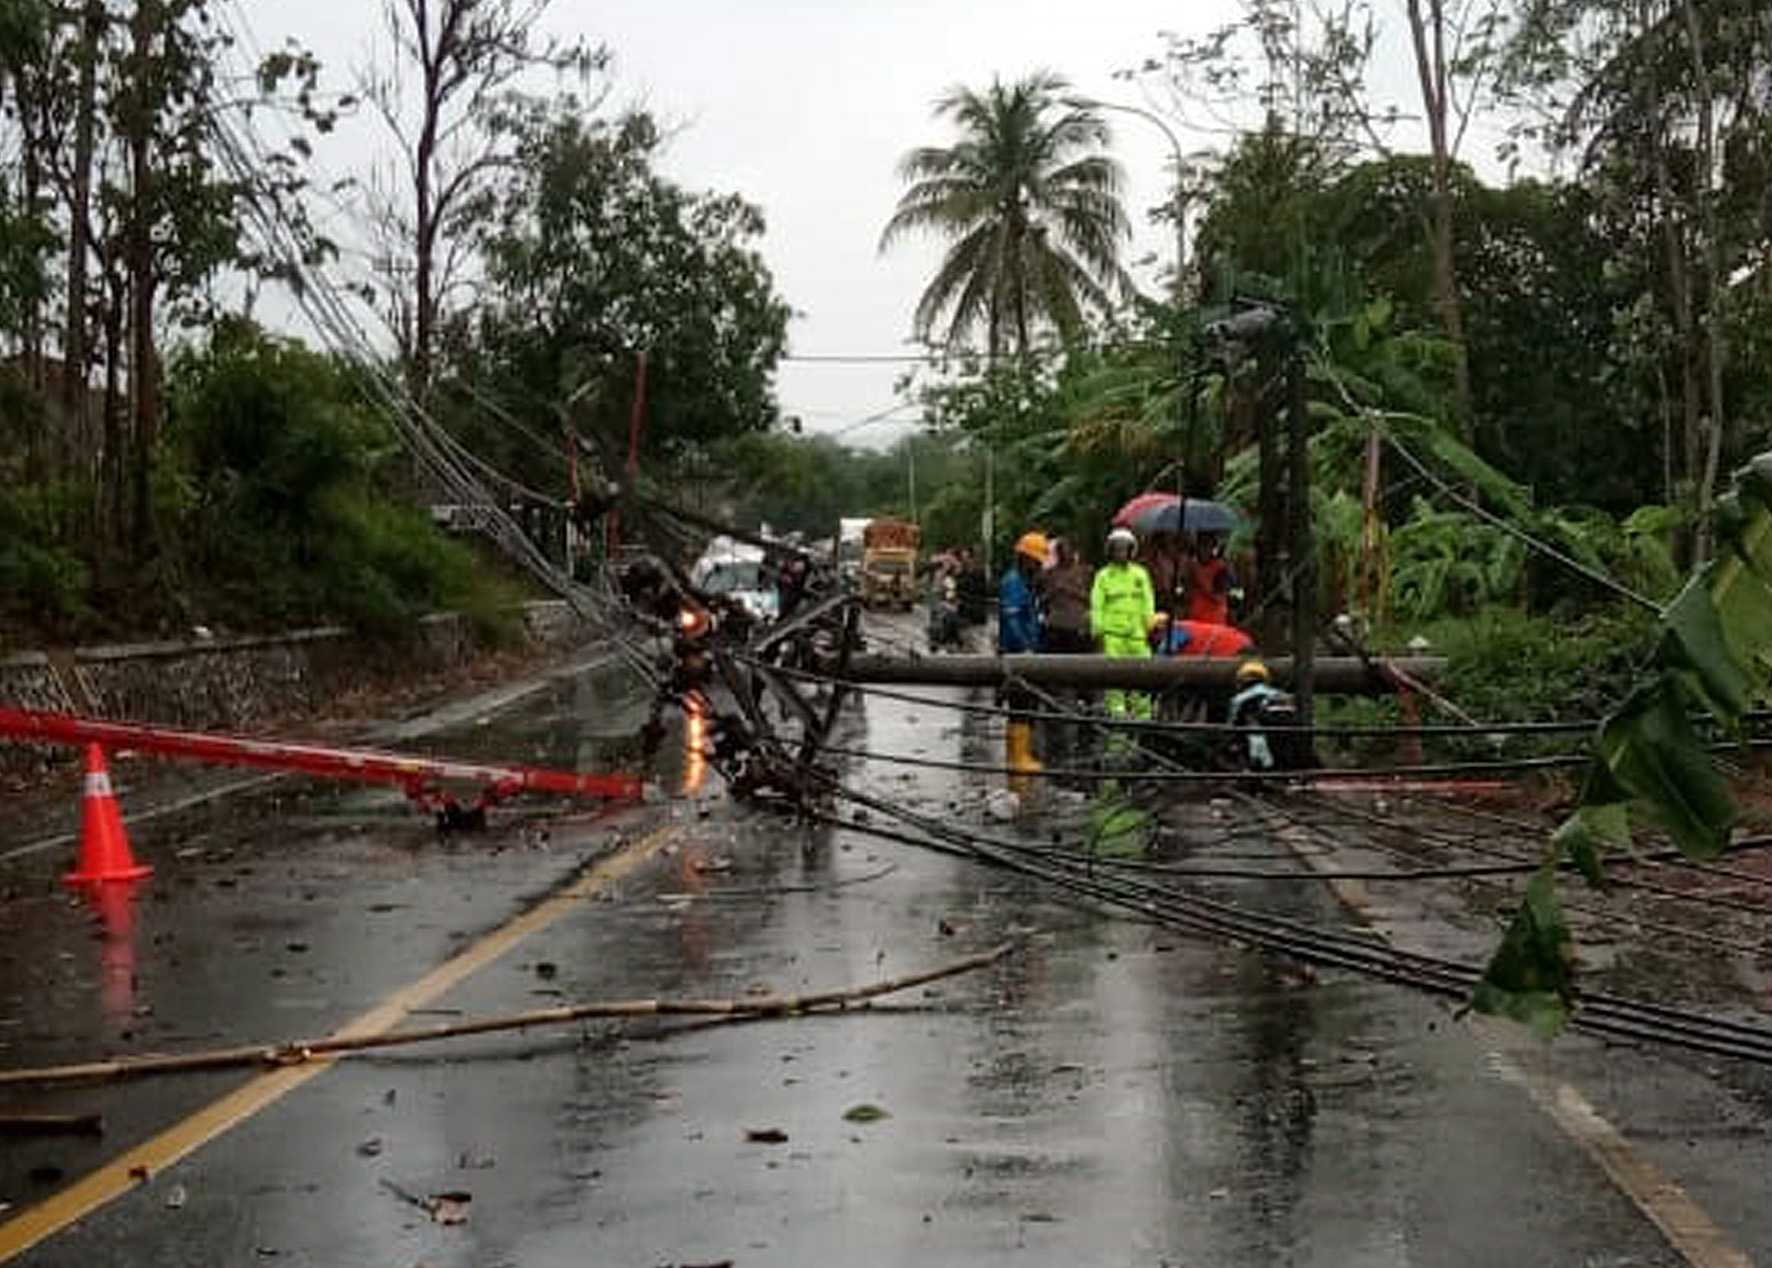 TUMBANG: Tiang listrik di tepi jalan raya Ajibarang-Wangon tepatnya di Desa Cikakak, Kecamatan Wangon tumbang dan melintang di jalan raya, Kamis (14/11) siang. (SB/dok)